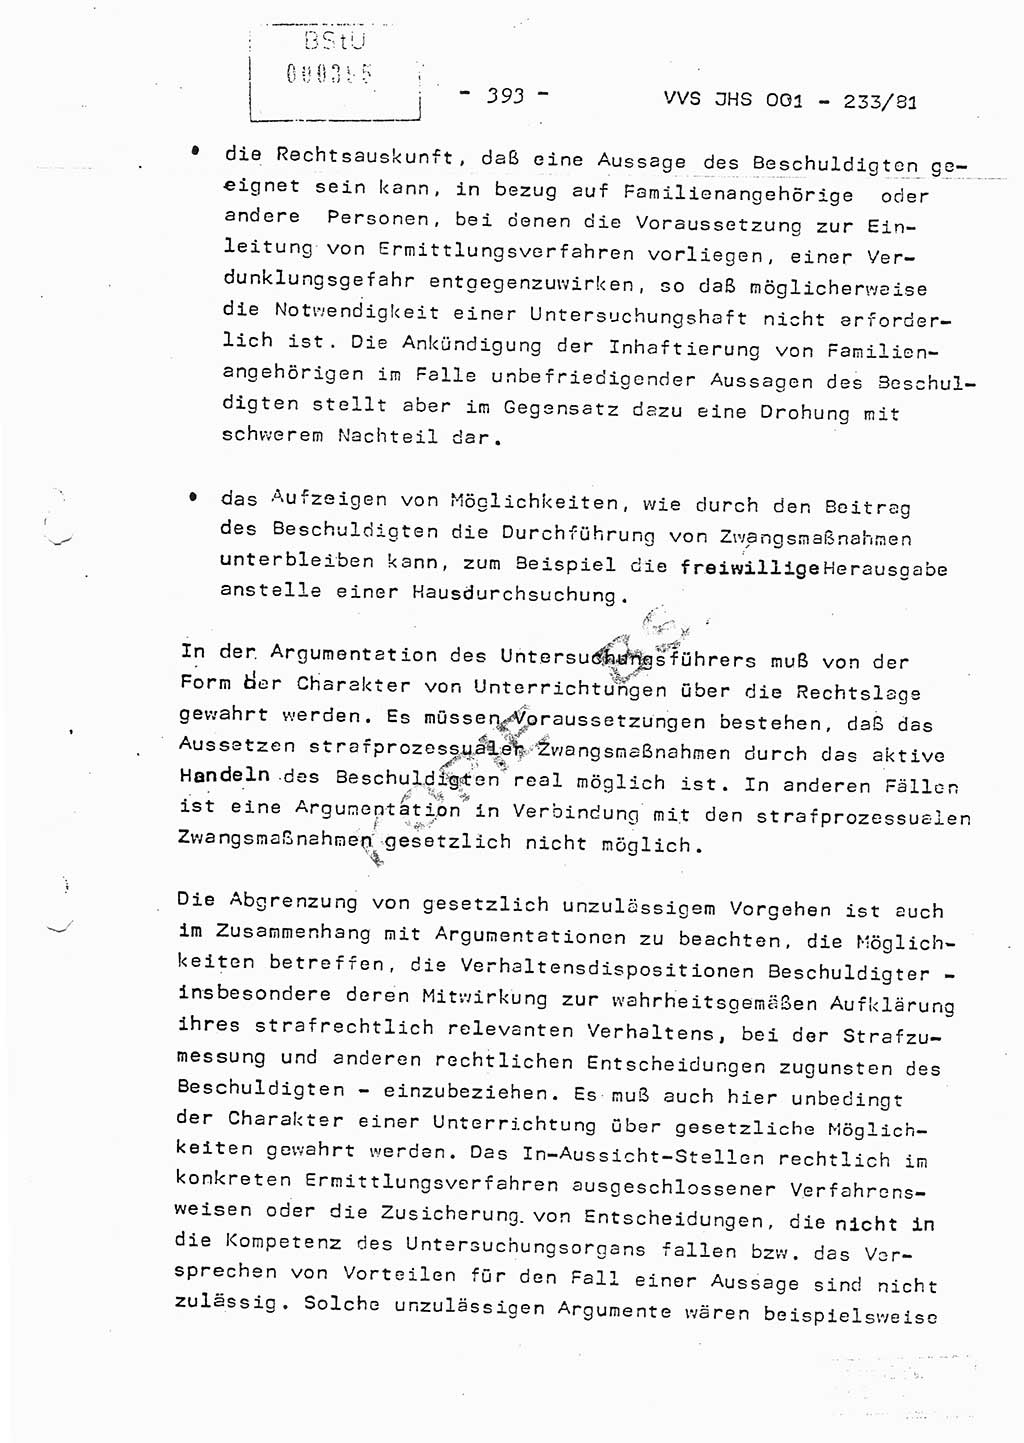 Dissertation Oberstleutnant Horst Zank (JHS), Oberstleutnant Dr. Karl-Heinz Knoblauch (JHS), Oberstleutnant Gustav-Adolf Kowalewski (HA Ⅸ), Oberstleutnant Wolfgang Plötner (HA Ⅸ), Ministerium für Staatssicherheit (MfS) [Deutsche Demokratische Republik (DDR)], Juristische Hochschule (JHS), Vertrauliche Verschlußsache (VVS) o001-233/81, Potsdam 1981, Blatt 393 (Diss. MfS DDR JHS VVS o001-233/81 1981, Bl. 393)